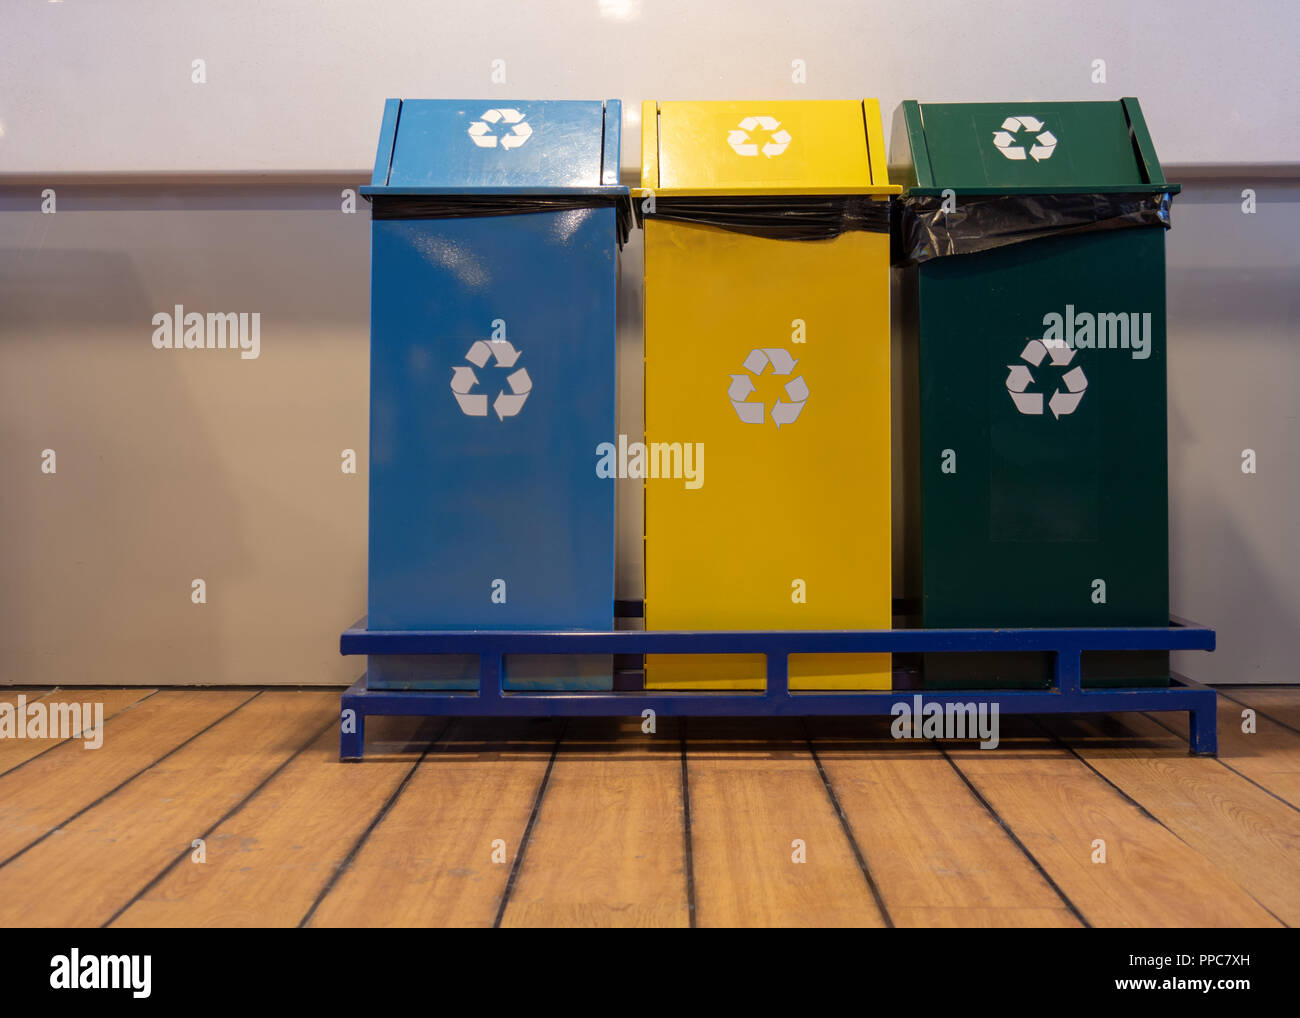 Différentes couleurs de bacs de recyclage pour la collecte de recyclage des matériaux Banque D'Images